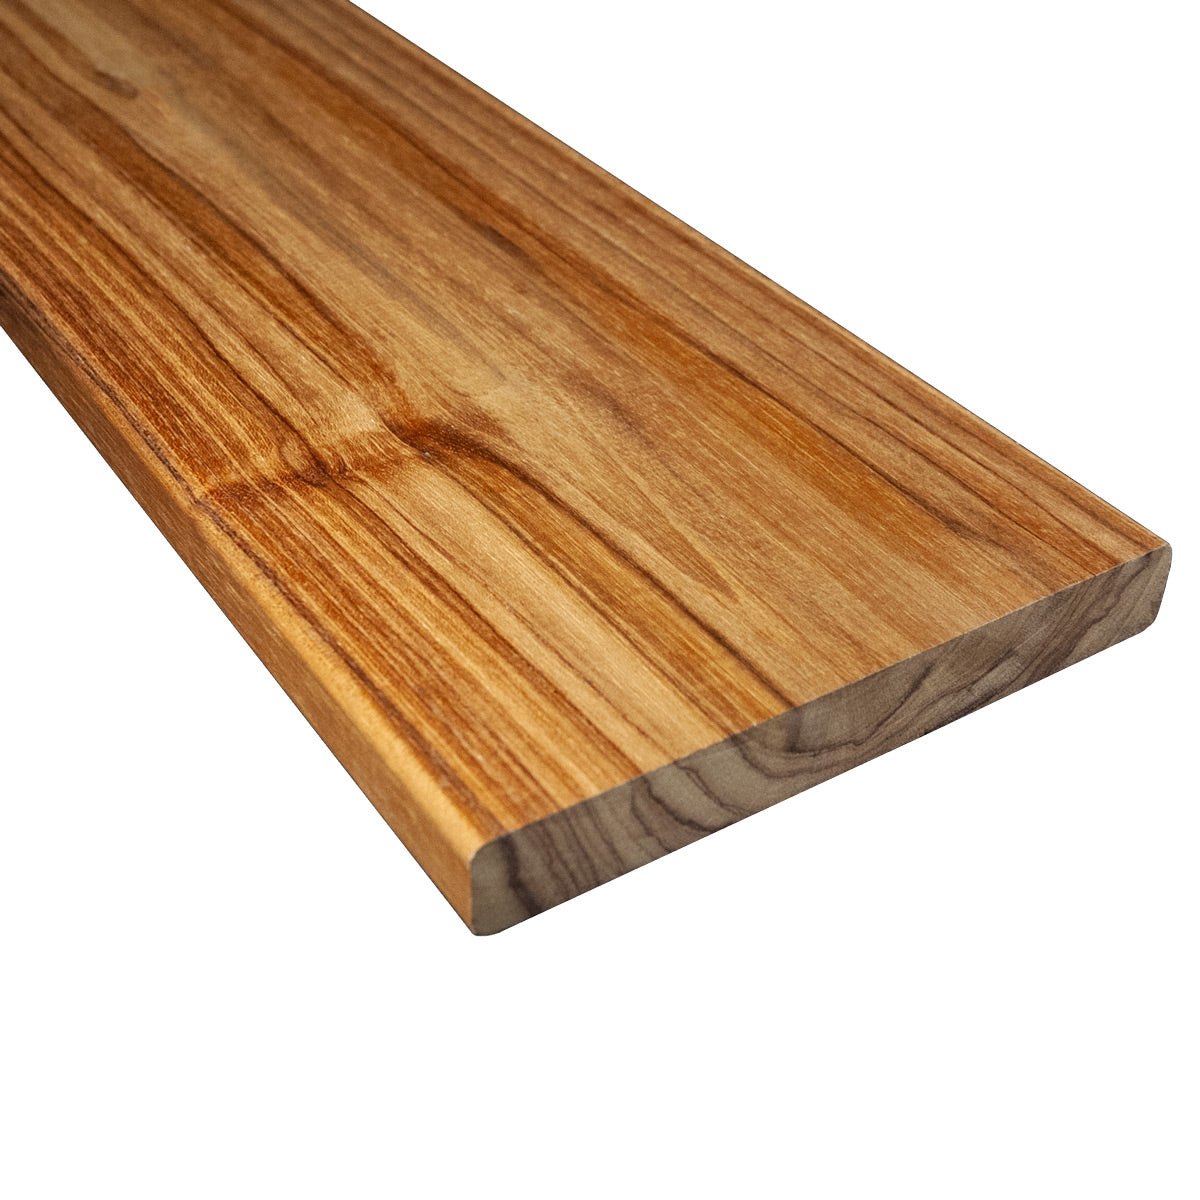 5/4 x 6 Teak Wood Decking